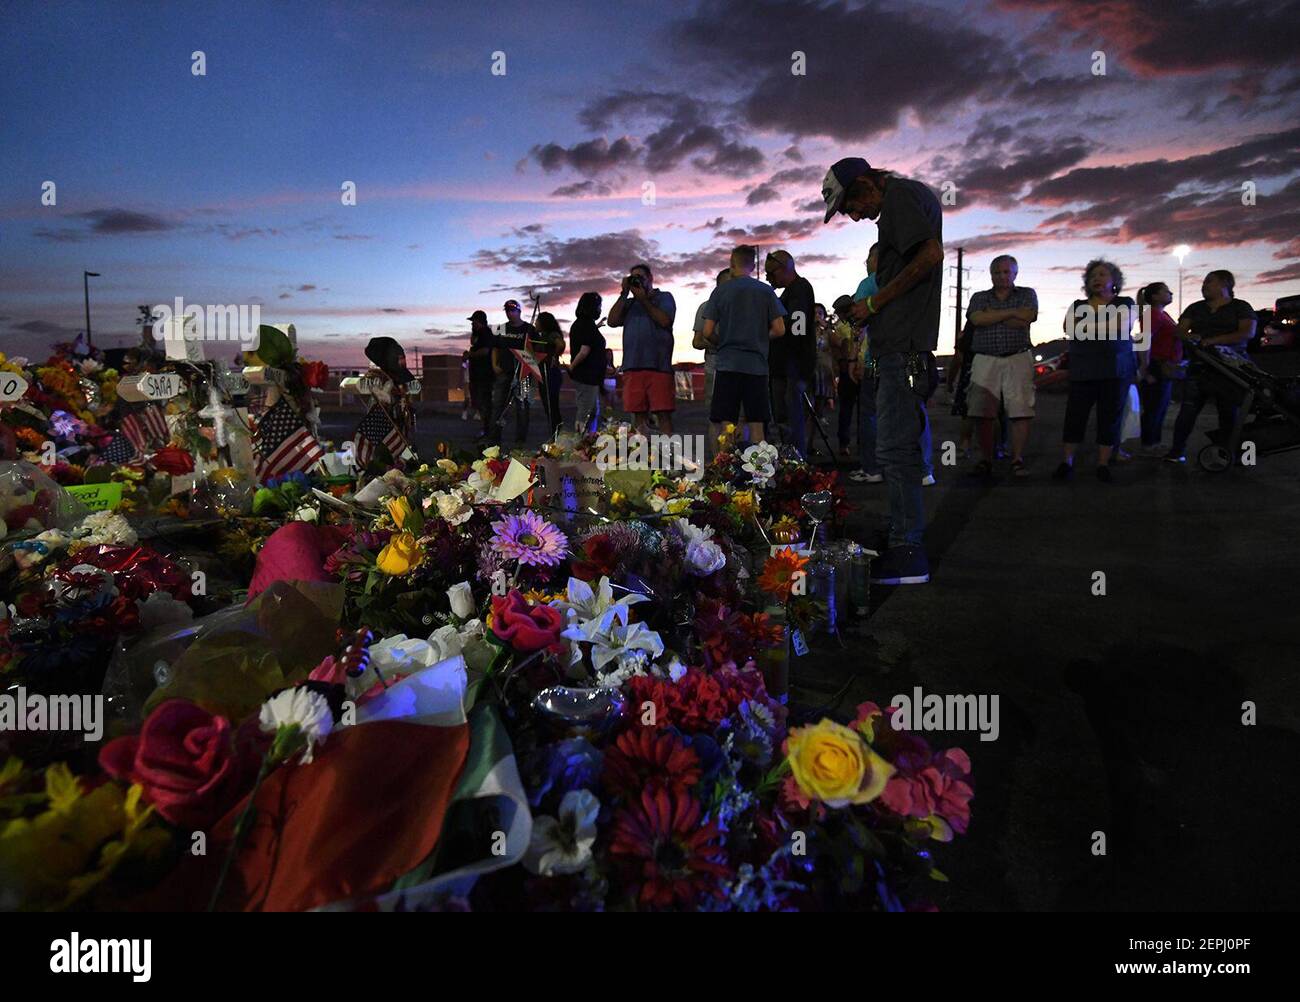 Antonio Basco permanece en silencio en la cruz de su esposa mientras los miembros de la familia visitan el sitio conmemorativo al anochecer después de los servicios funerarios para la víctima de disparos masivos de Walmart, Margie Reckard, el 17 de agosto de 2019 en el Paso, Texas. (Carol Guzy/Zuma Press/TNS) Foto de stock